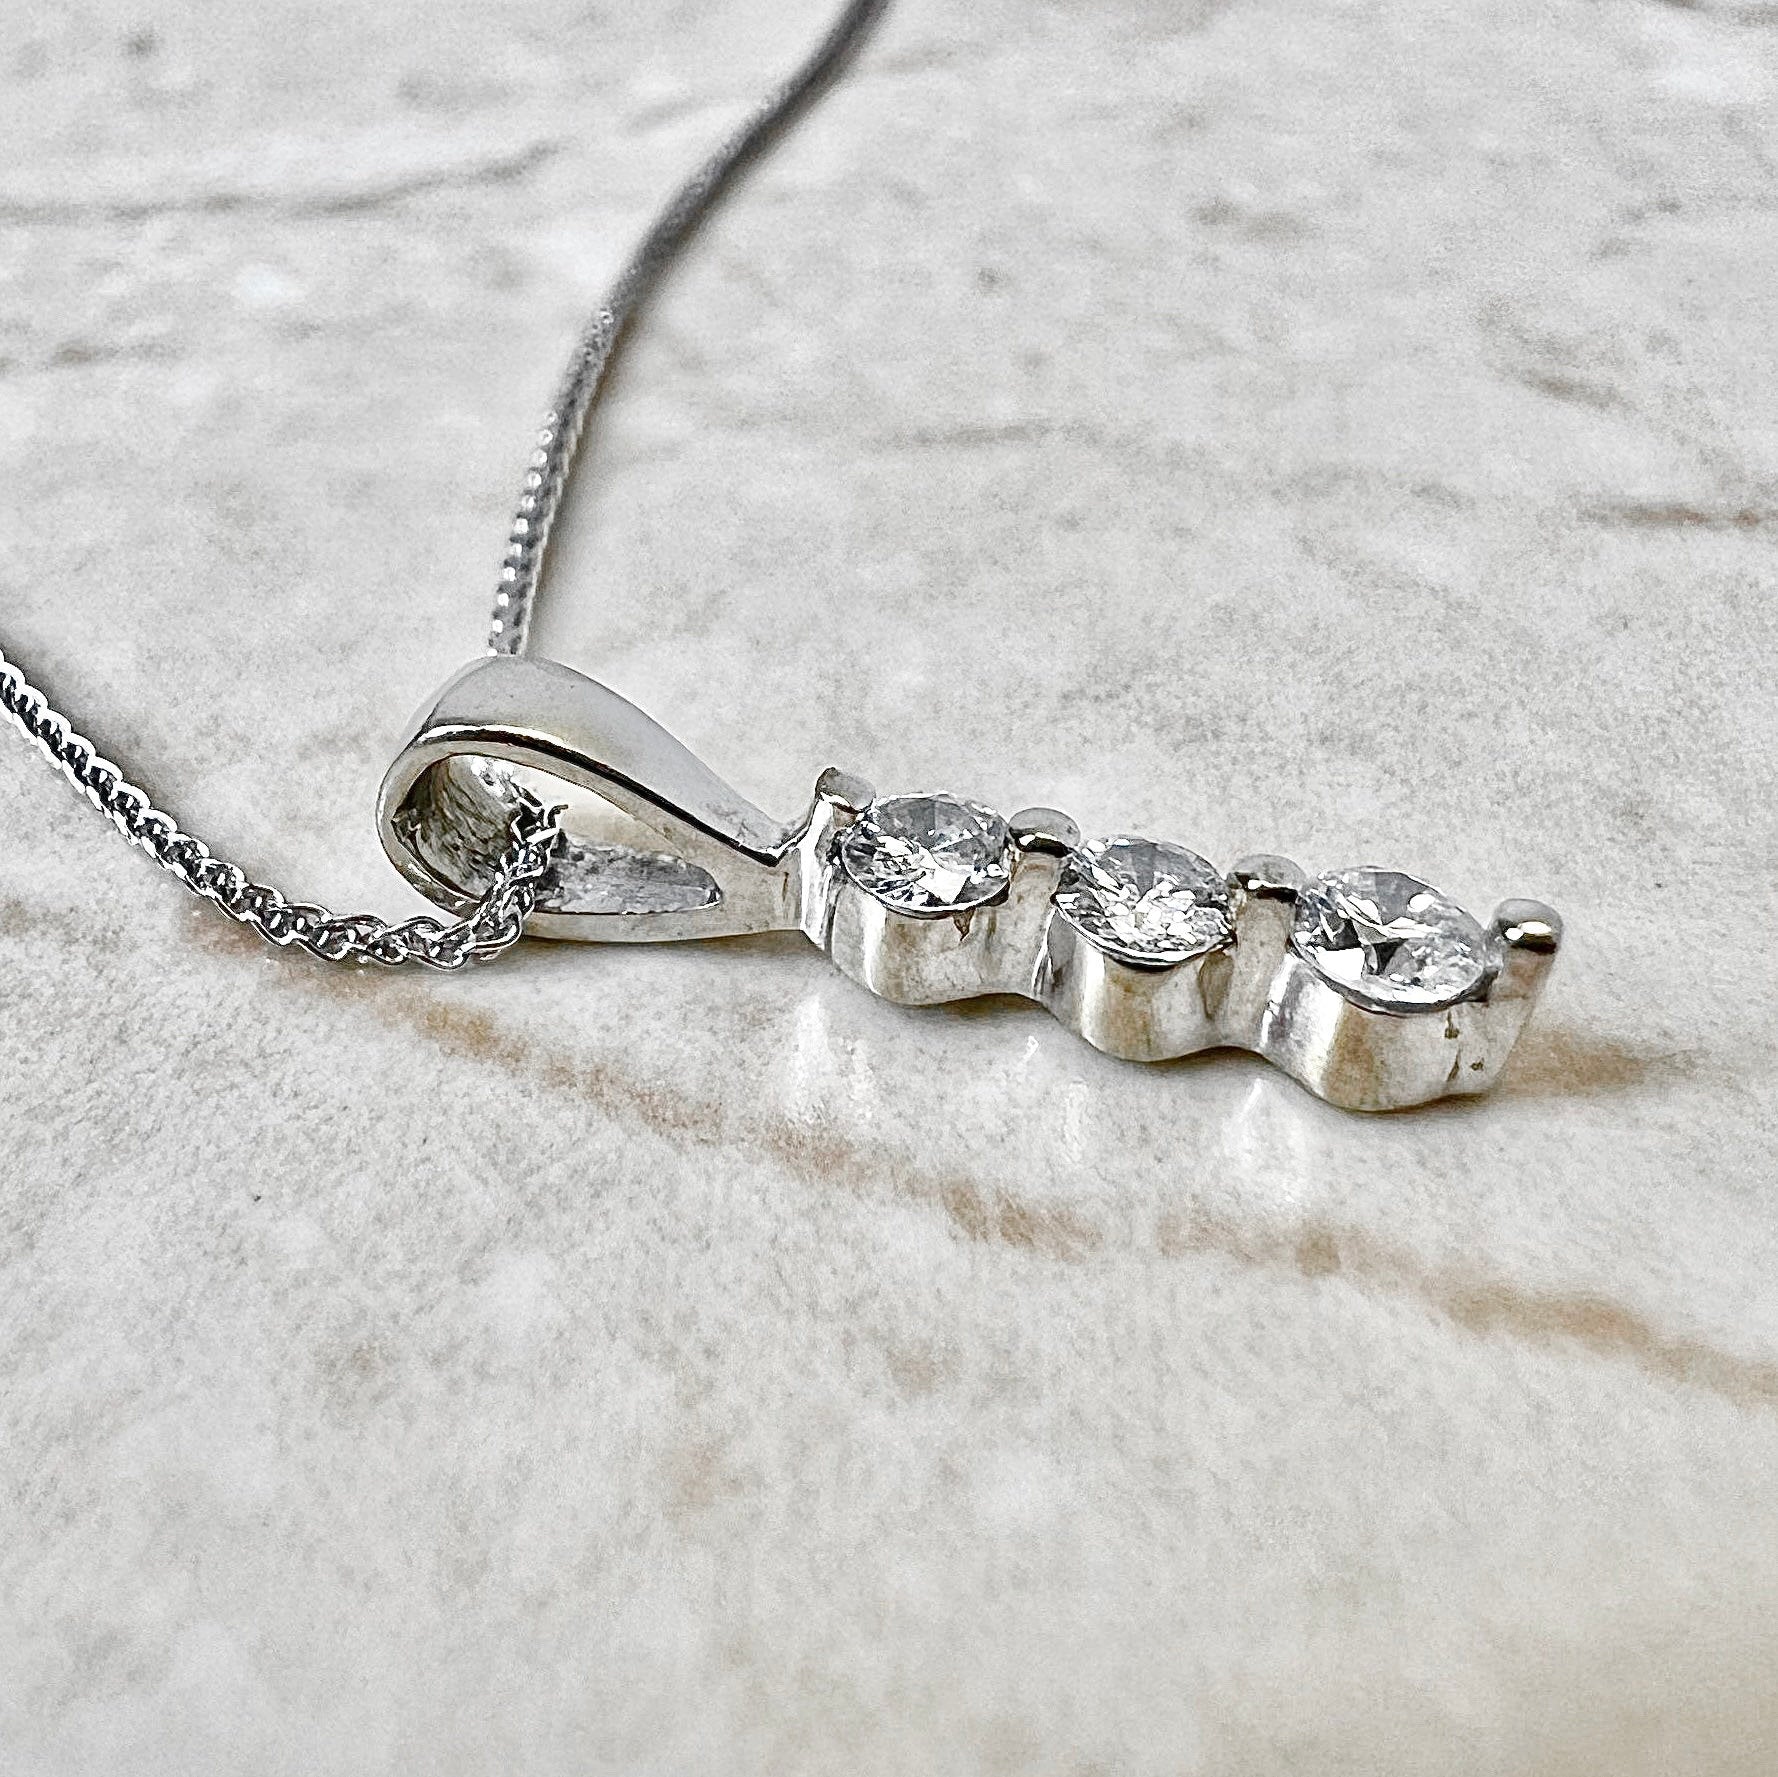 14K White Gold Diamond Pendant Necklace - White Gold Diamond Necklace - 3 Stone White Gold Pendant - Birthday Gift - Best Gift For Her